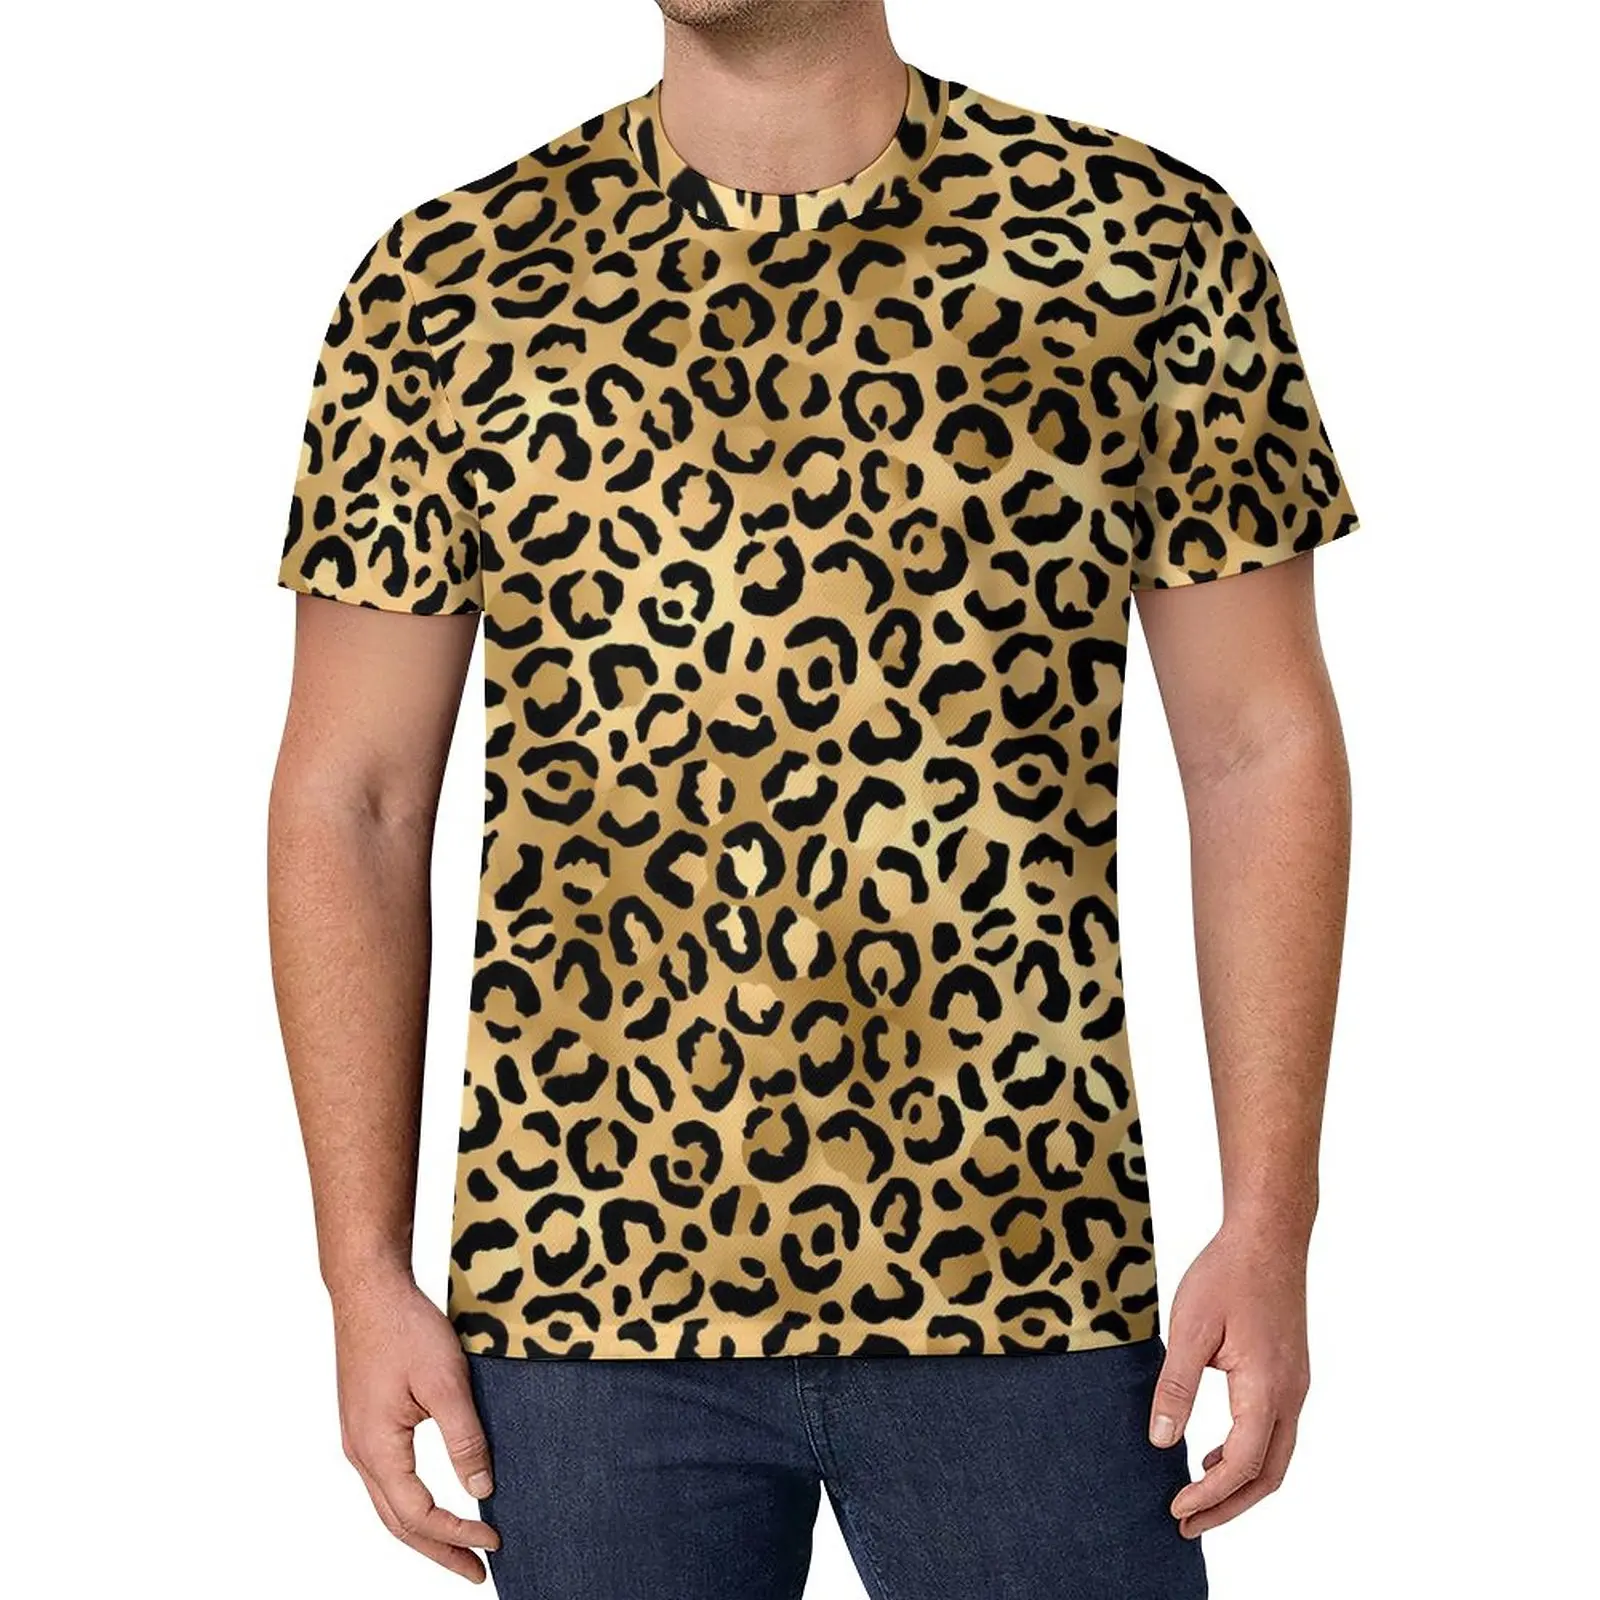 

Футболка мужская с принтом гепарда, Базовая рубашка в стиле хип-хоп, с коротким рукавом, графический Рисунок, чёрная, золотая, леопардовая расцветка, большие размеры, на лето